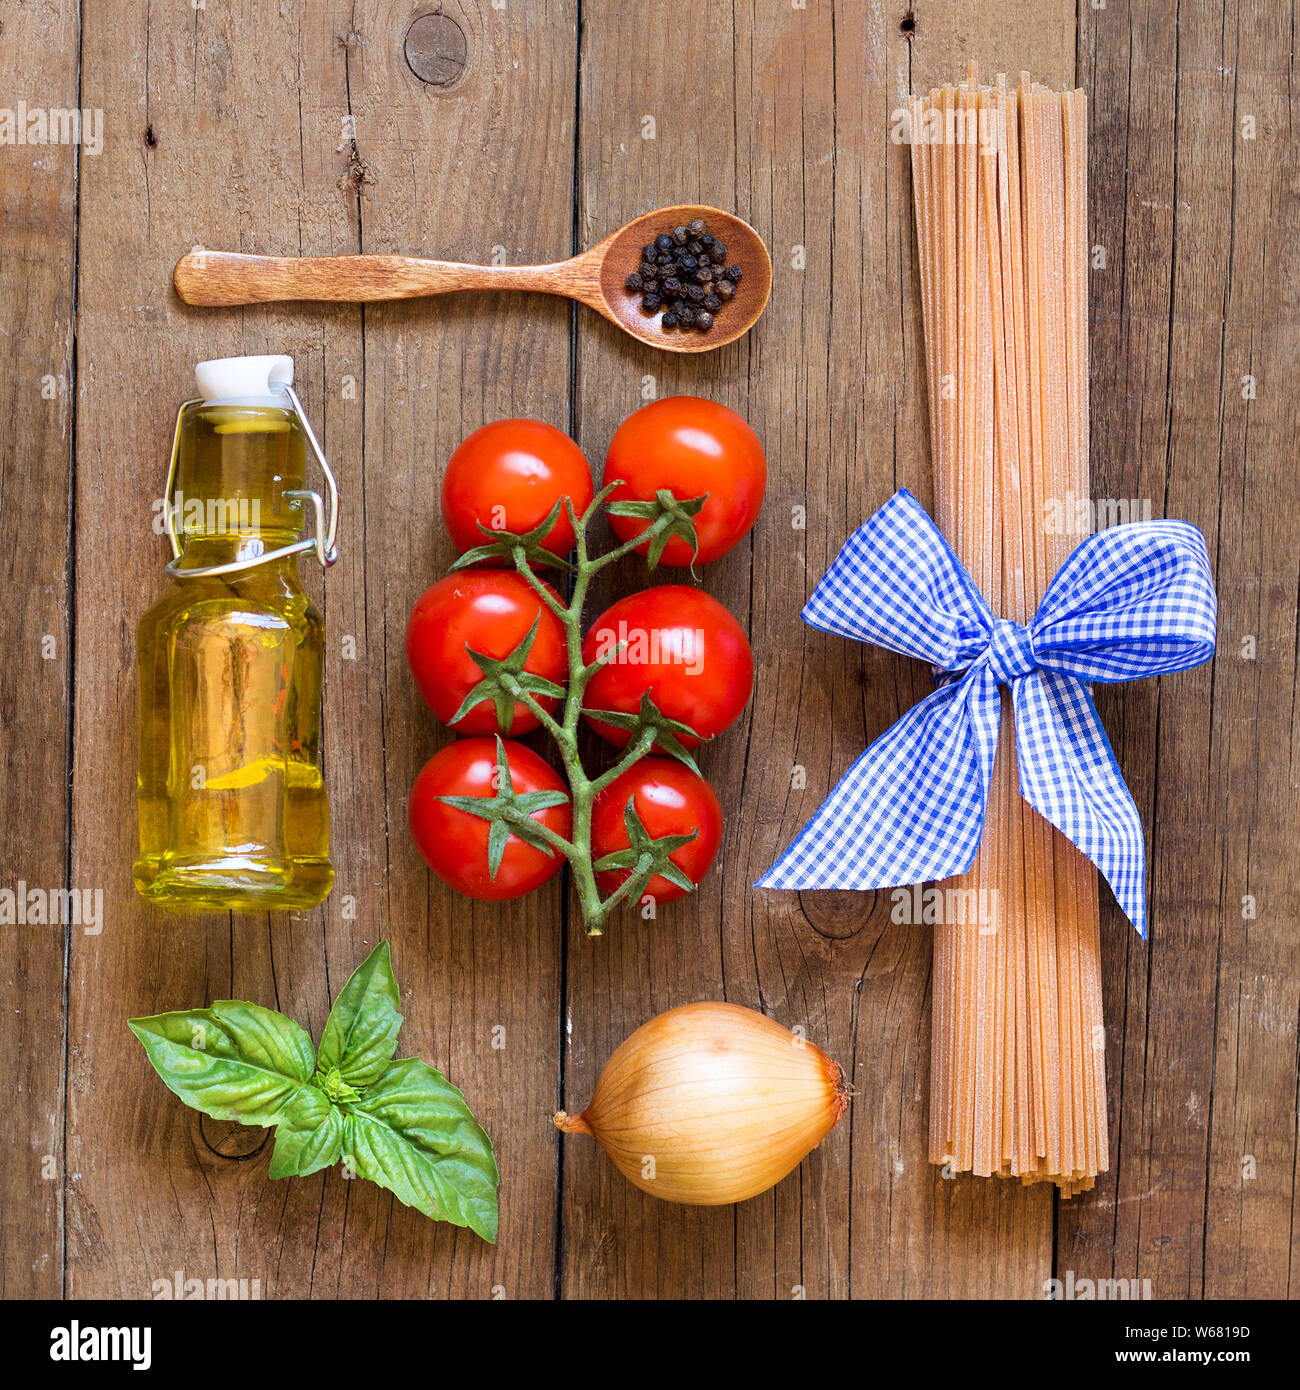 Ingridients pour pâtes avec sauce tomate - tomates, oignons, basilic, huile d'olive vierge extra, poivre et spaghetti de blé entier Banque D'Images